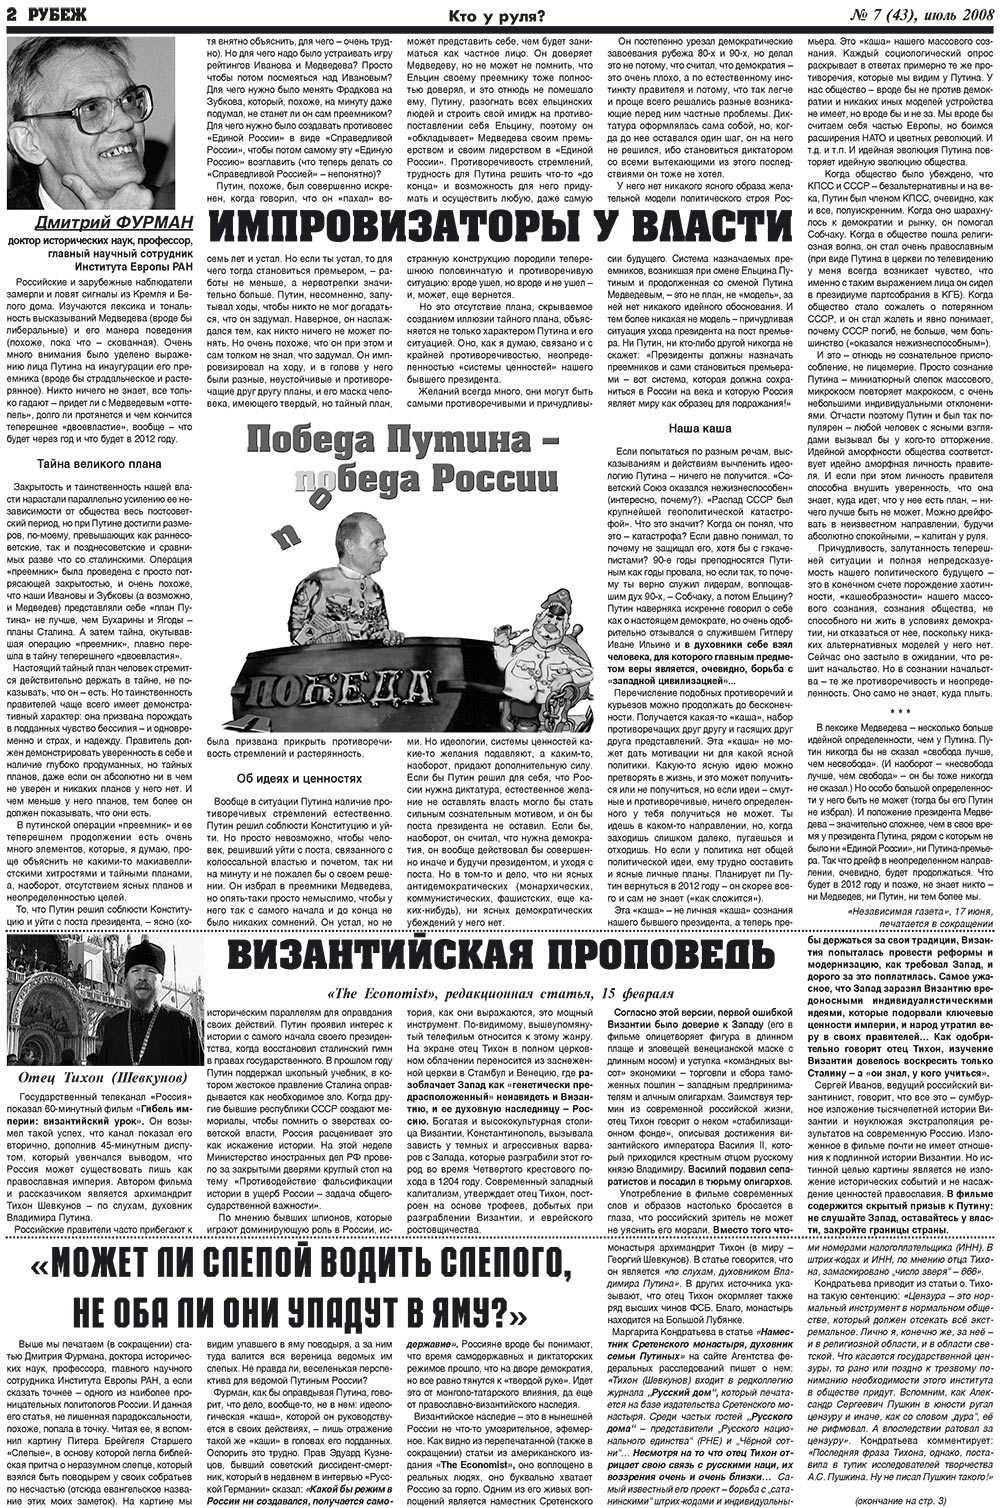 Рубеж (газета). 2008 год, номер 7, стр. 2